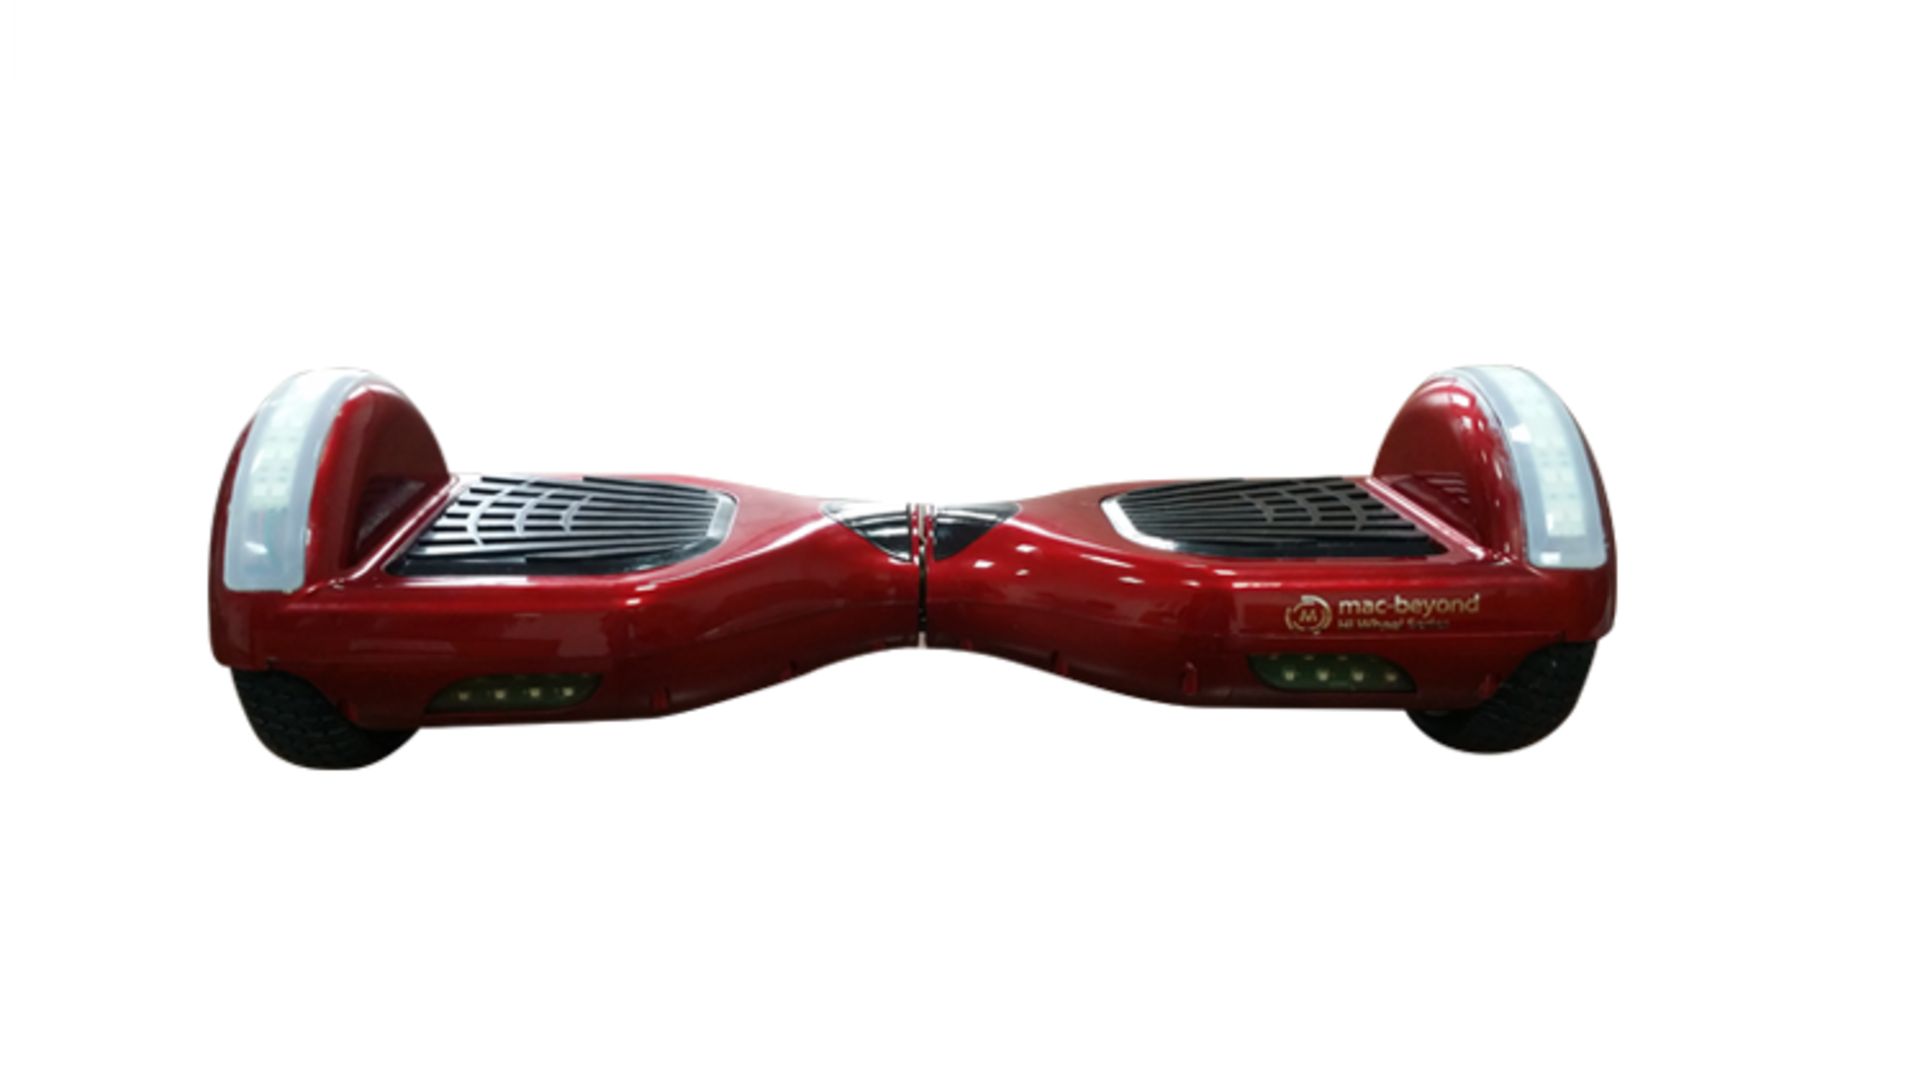 macbeyond x Hi wheel Series, Red Model Name: R2 LED (6.5 inch wheels, Best Seller) Smart personal